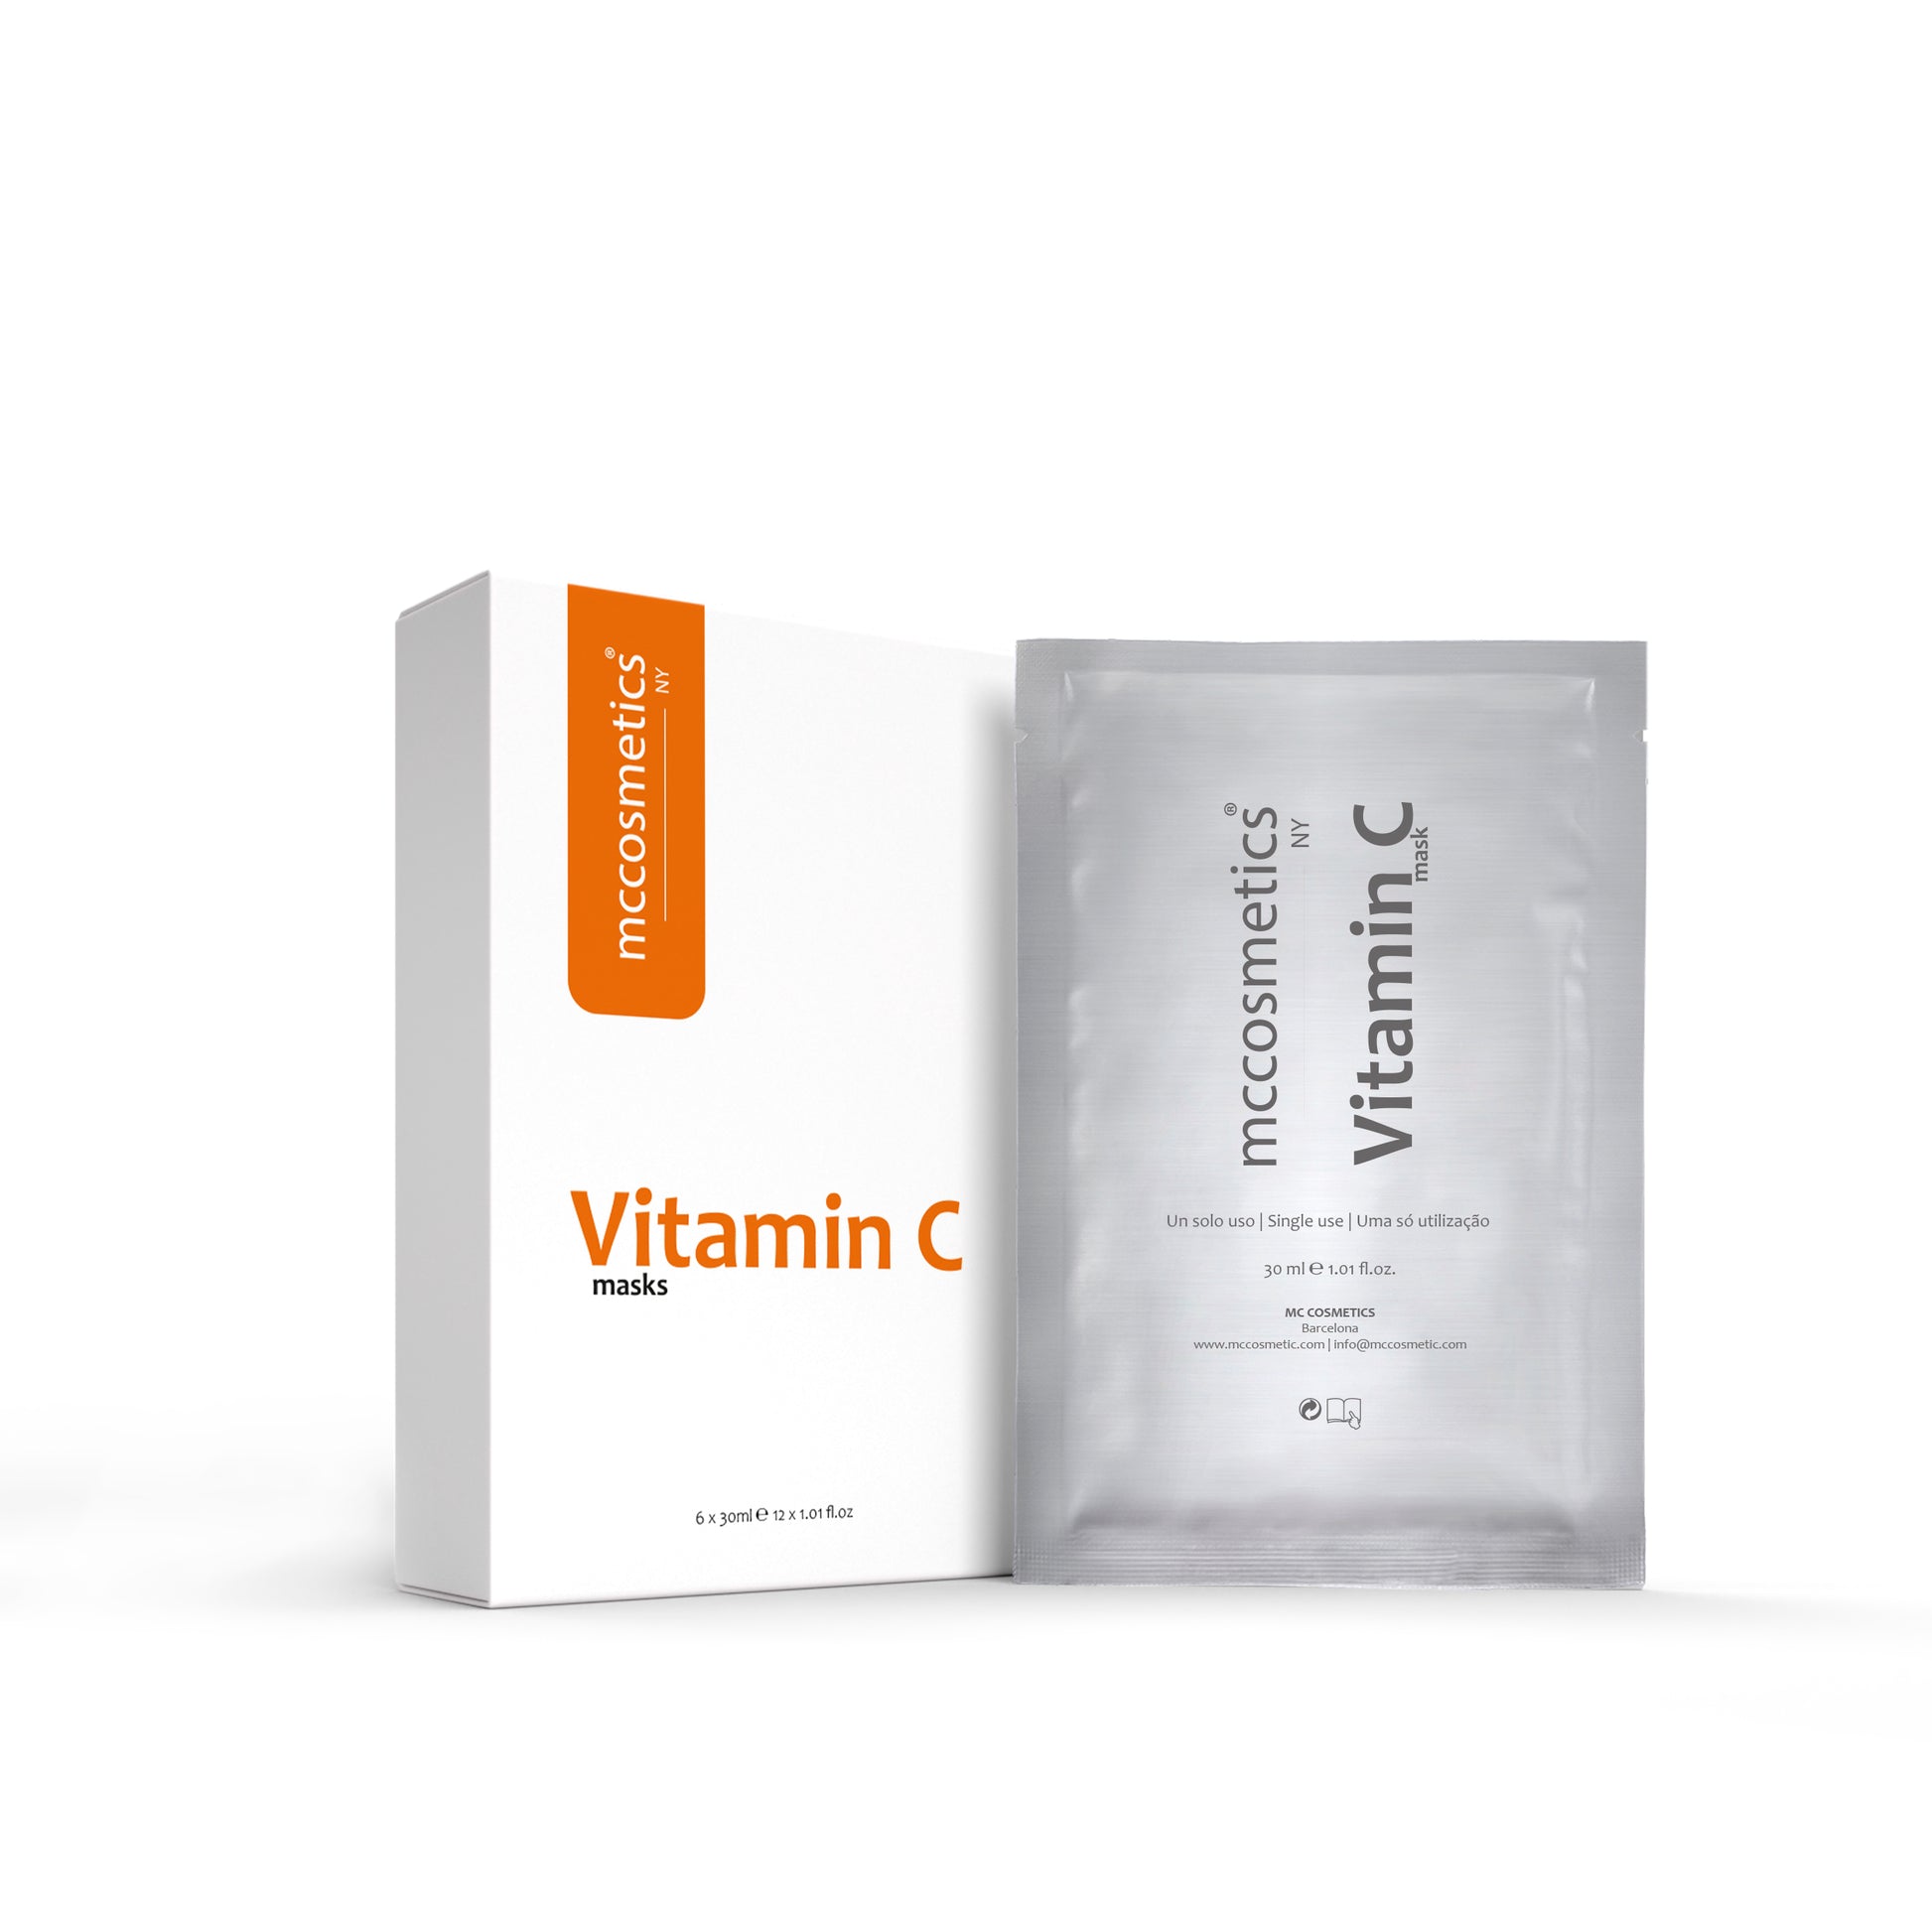 vitamin c mask - mccosmetics.ny